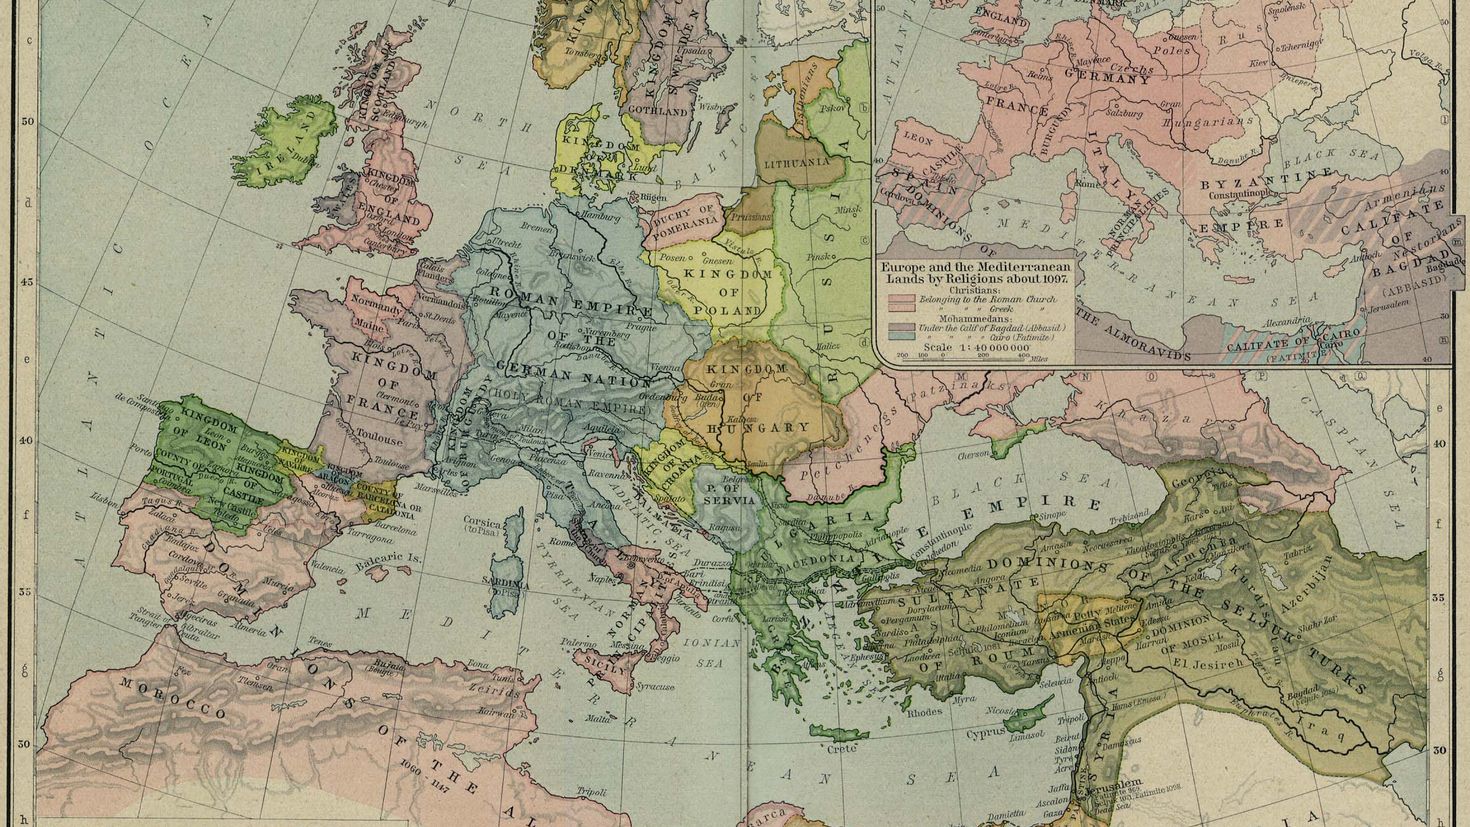 12 13 века европа. Политическая карта Европы 17 века. Карта Европы 13 век. Политическая карта Европы в 9-11 веке. Историческая карта Европы 19 века.